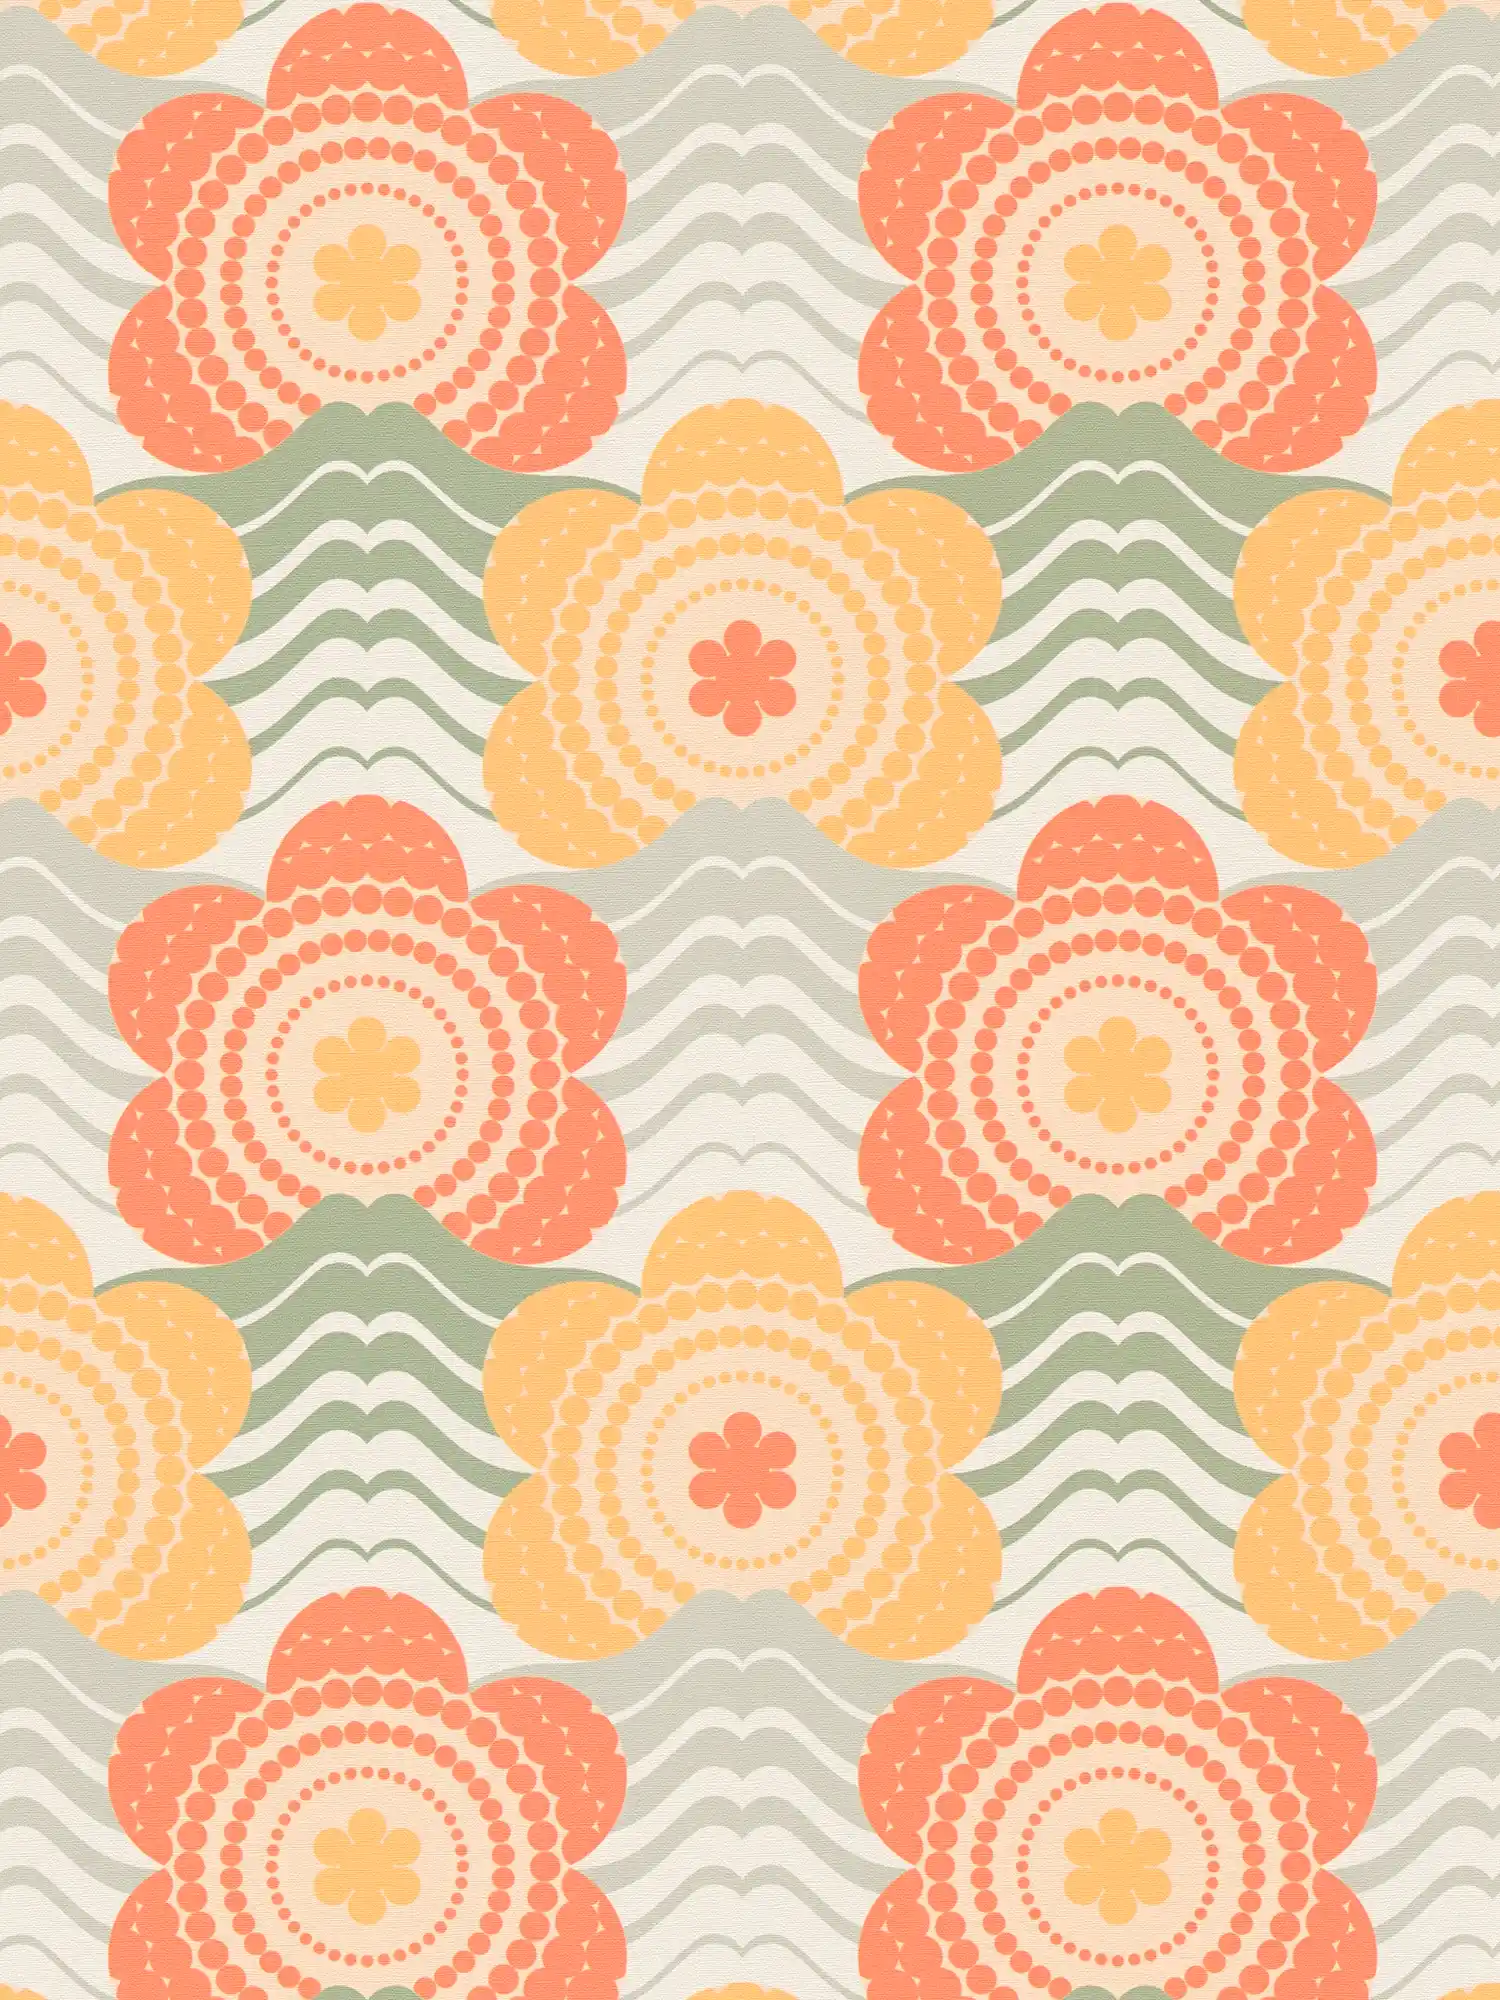 Retro Vliestapete mit Wellen und Blumen Muster – Orange, Gelb, Grün
